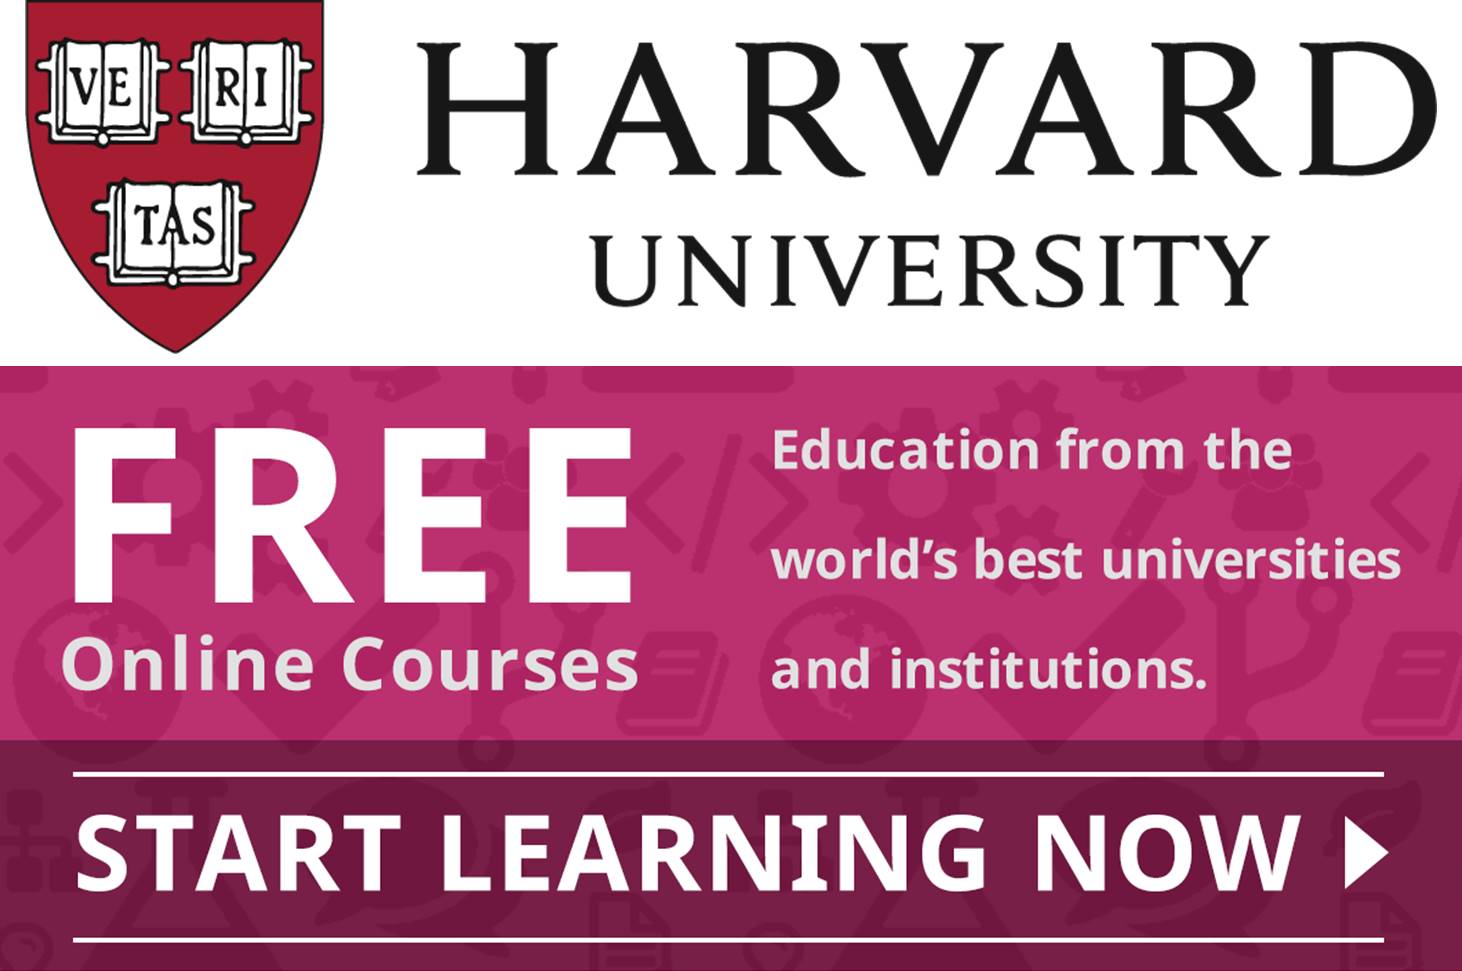 كورسات جامعة هارفارد المجانية عبر الإنترنت 2020 (ممولة بالكامل) (شهادات معتمدة)